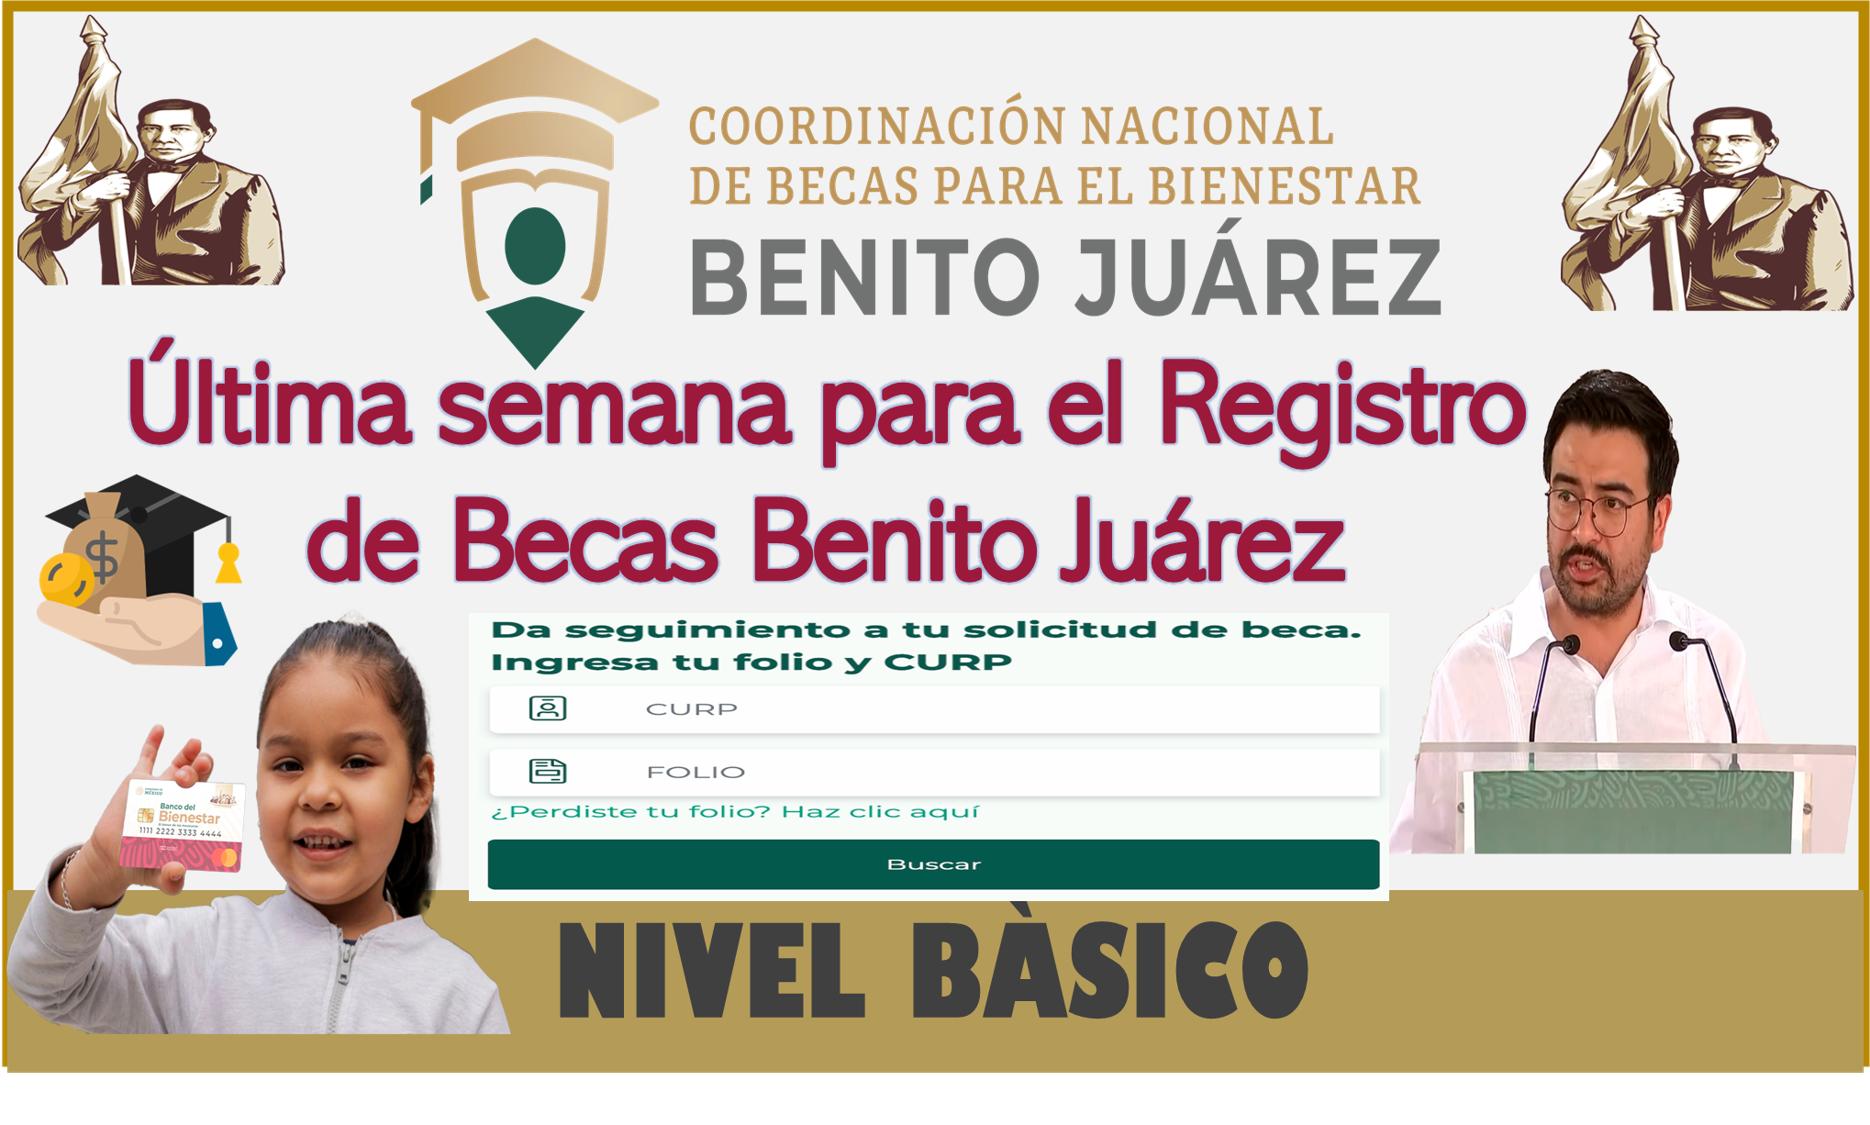 Última semana para el Registro de Becas Benito Juárez de Nivel Básico 